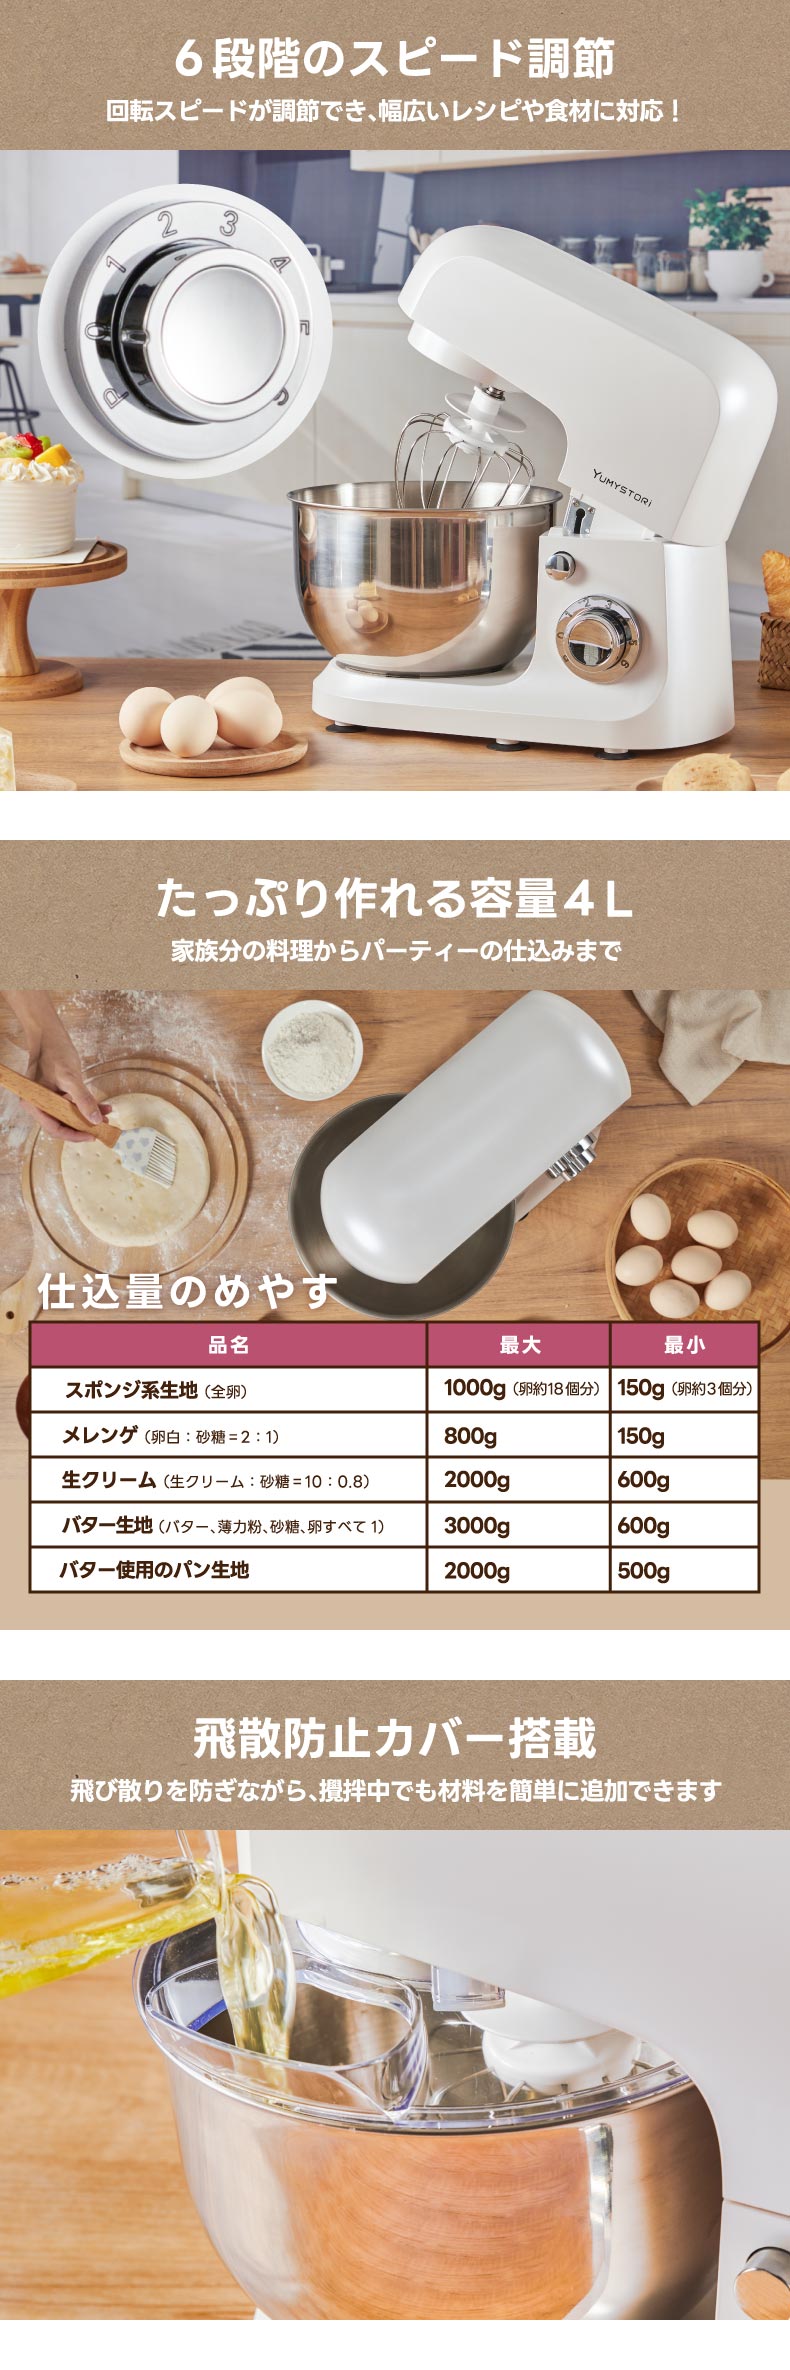 スタンドミキサー 攪拌機 yumystori 電動ミキサー 大容量 4L 卓上型 